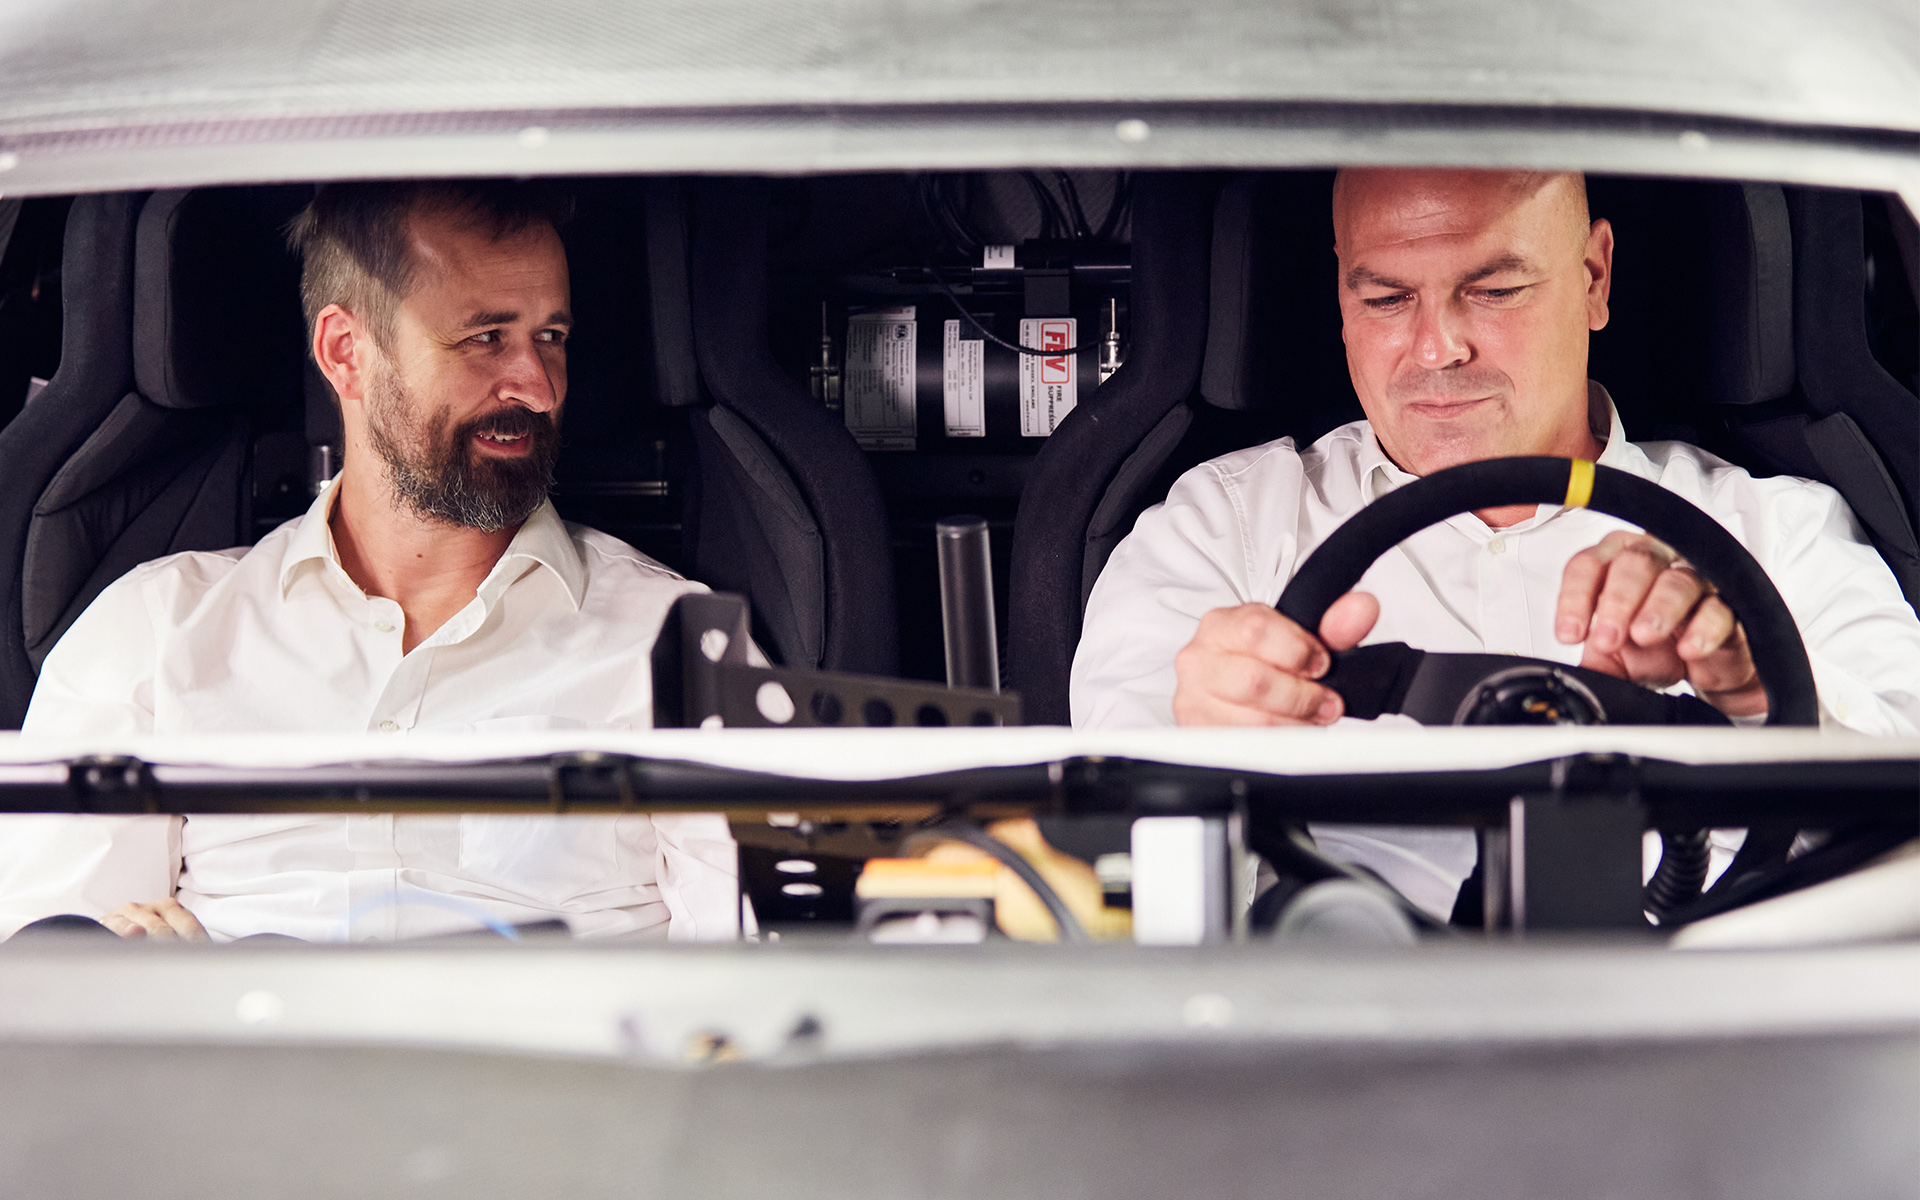 Bastian Rosenauer (à gauche) développe les modèles de série chez Audi Sport, sous la direction de Stefan Murrweiss (à droite). Pour construire l'Audi S1 e-tron Quattro Hoonitron¹, ils ont tous deux pu s'appuyer sur leur expérience et leur réseau professionnels.